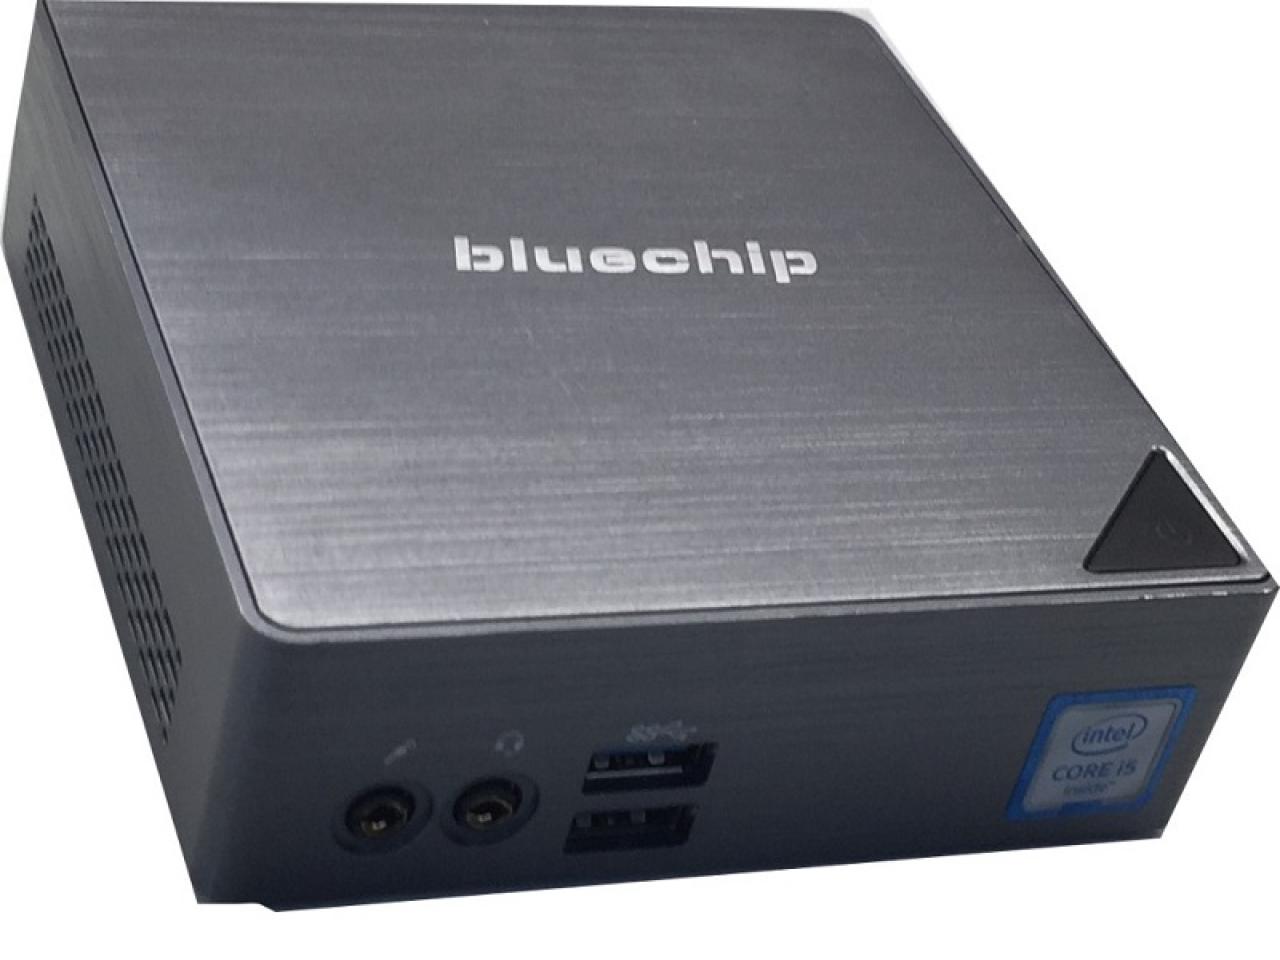 Bluechip Businessline S1650  MP  - shop.bb-net.de